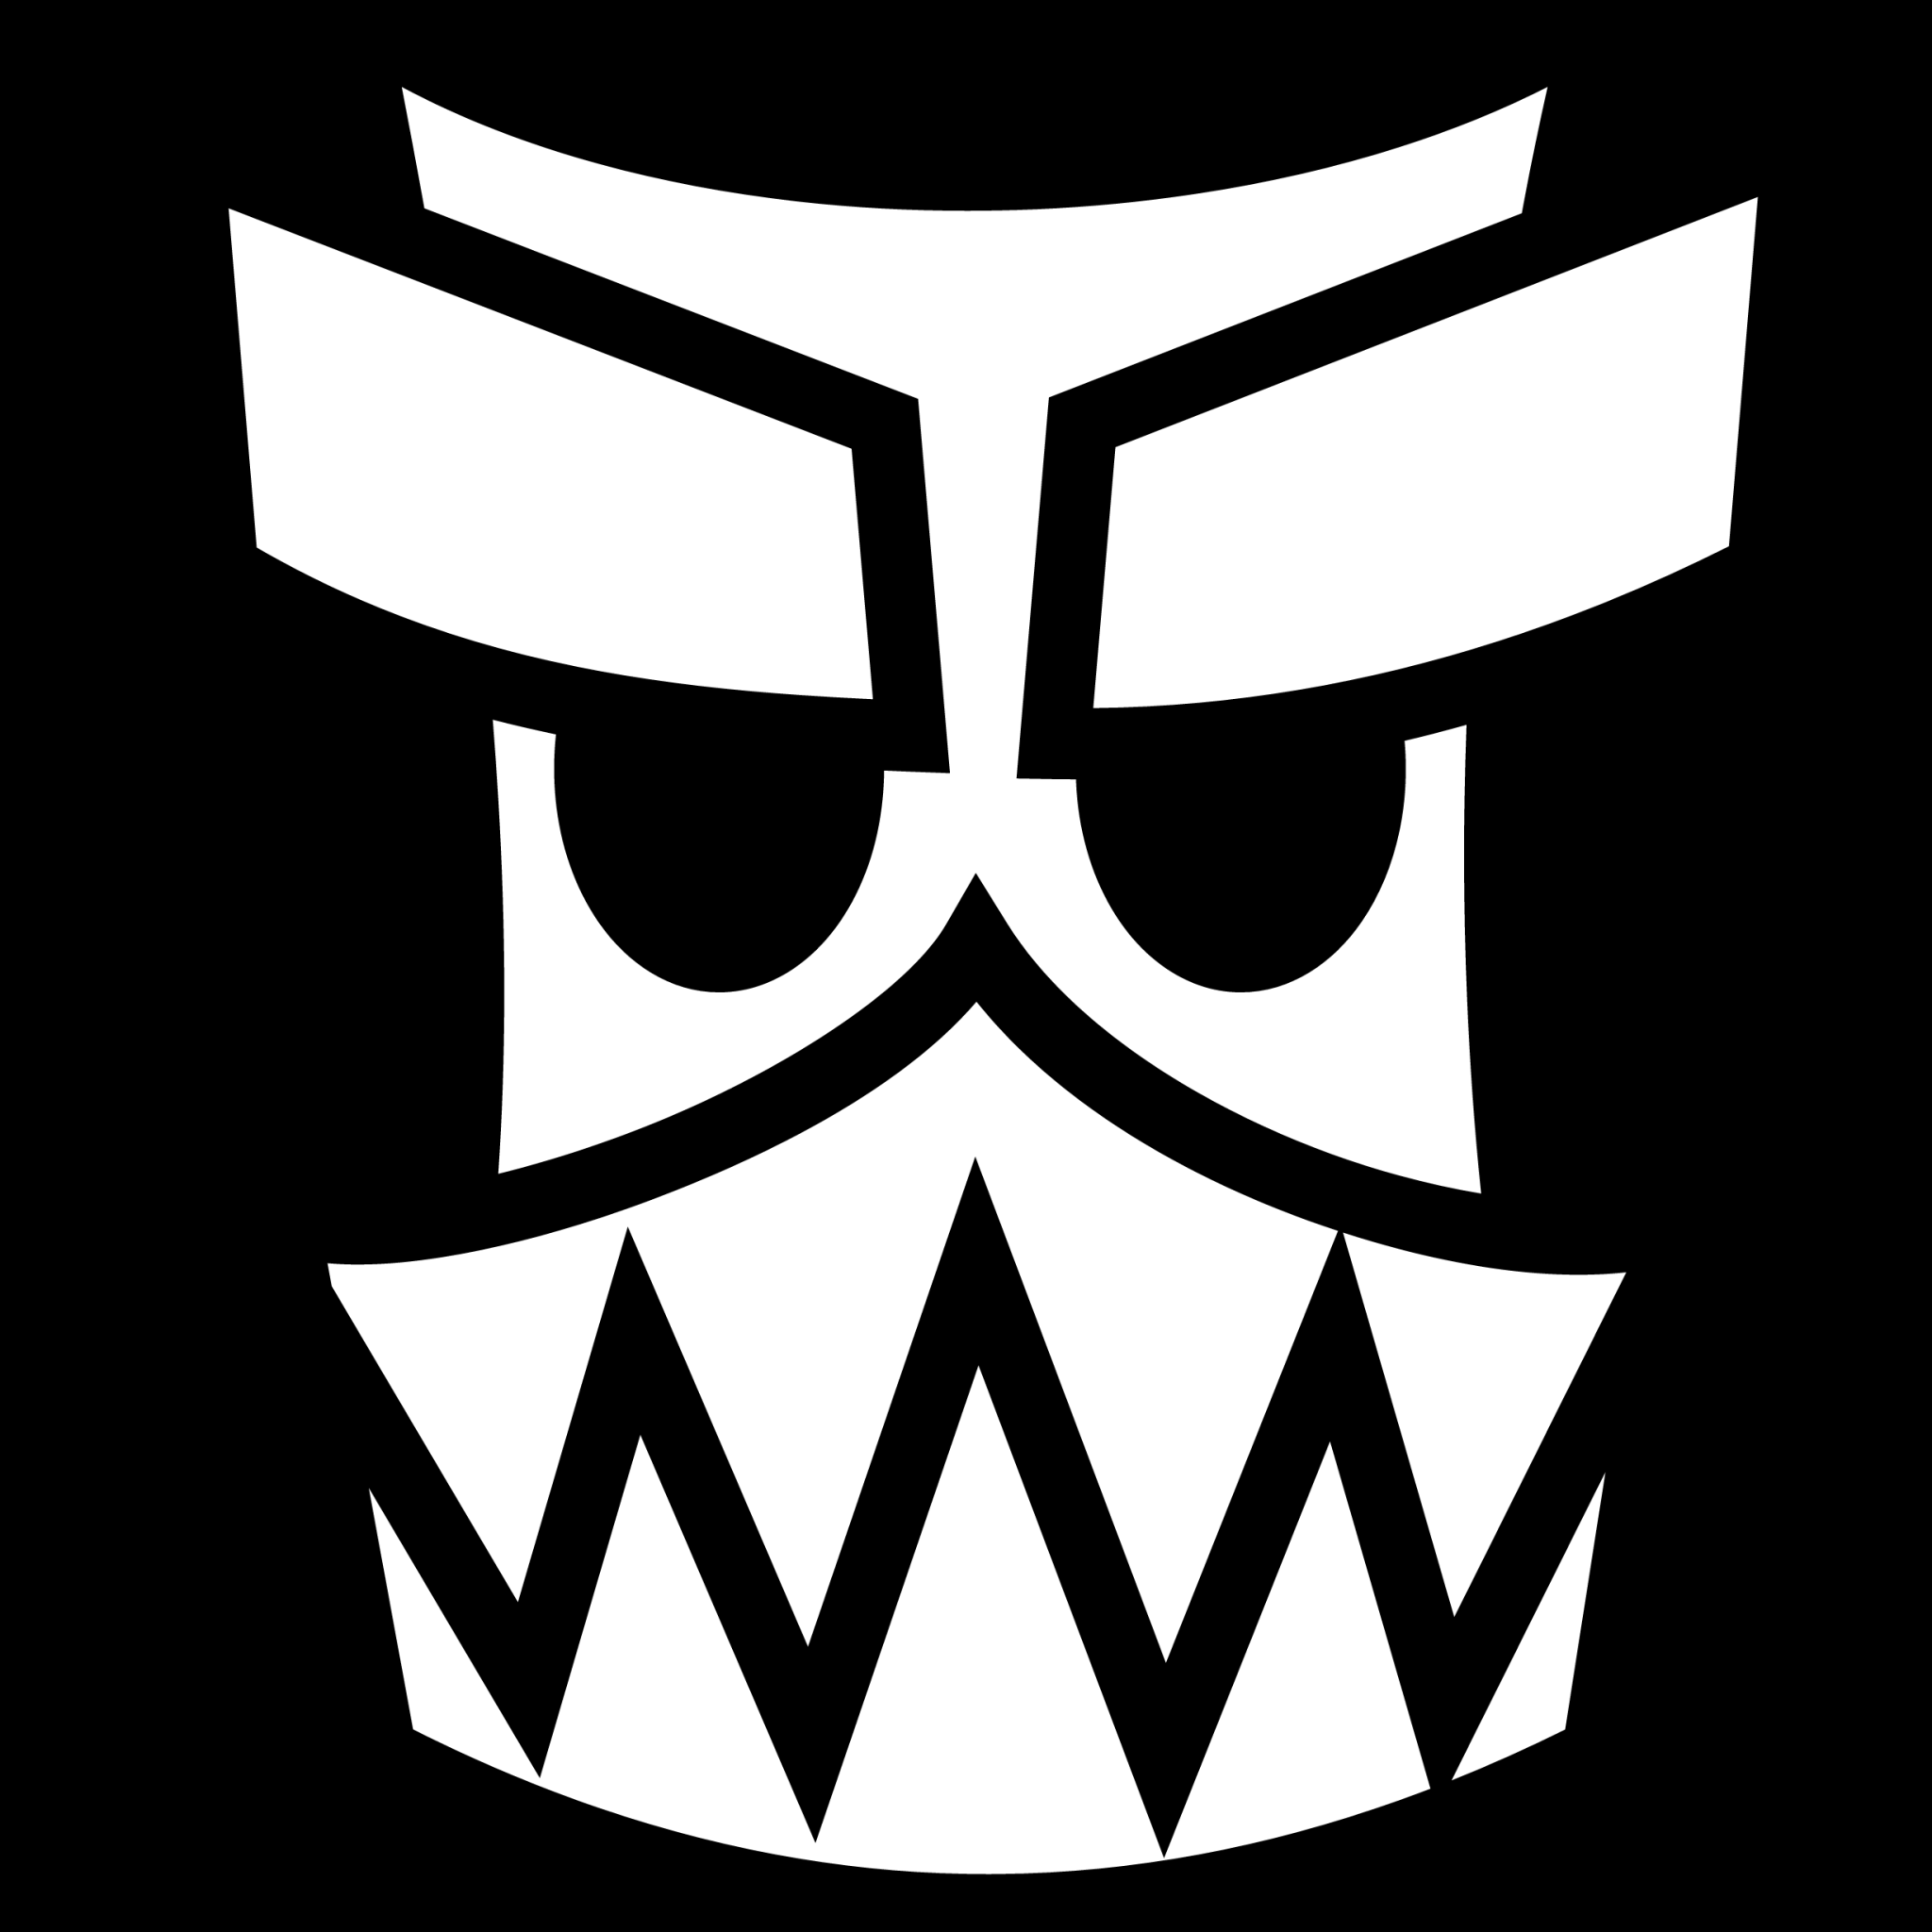 totem mask icon